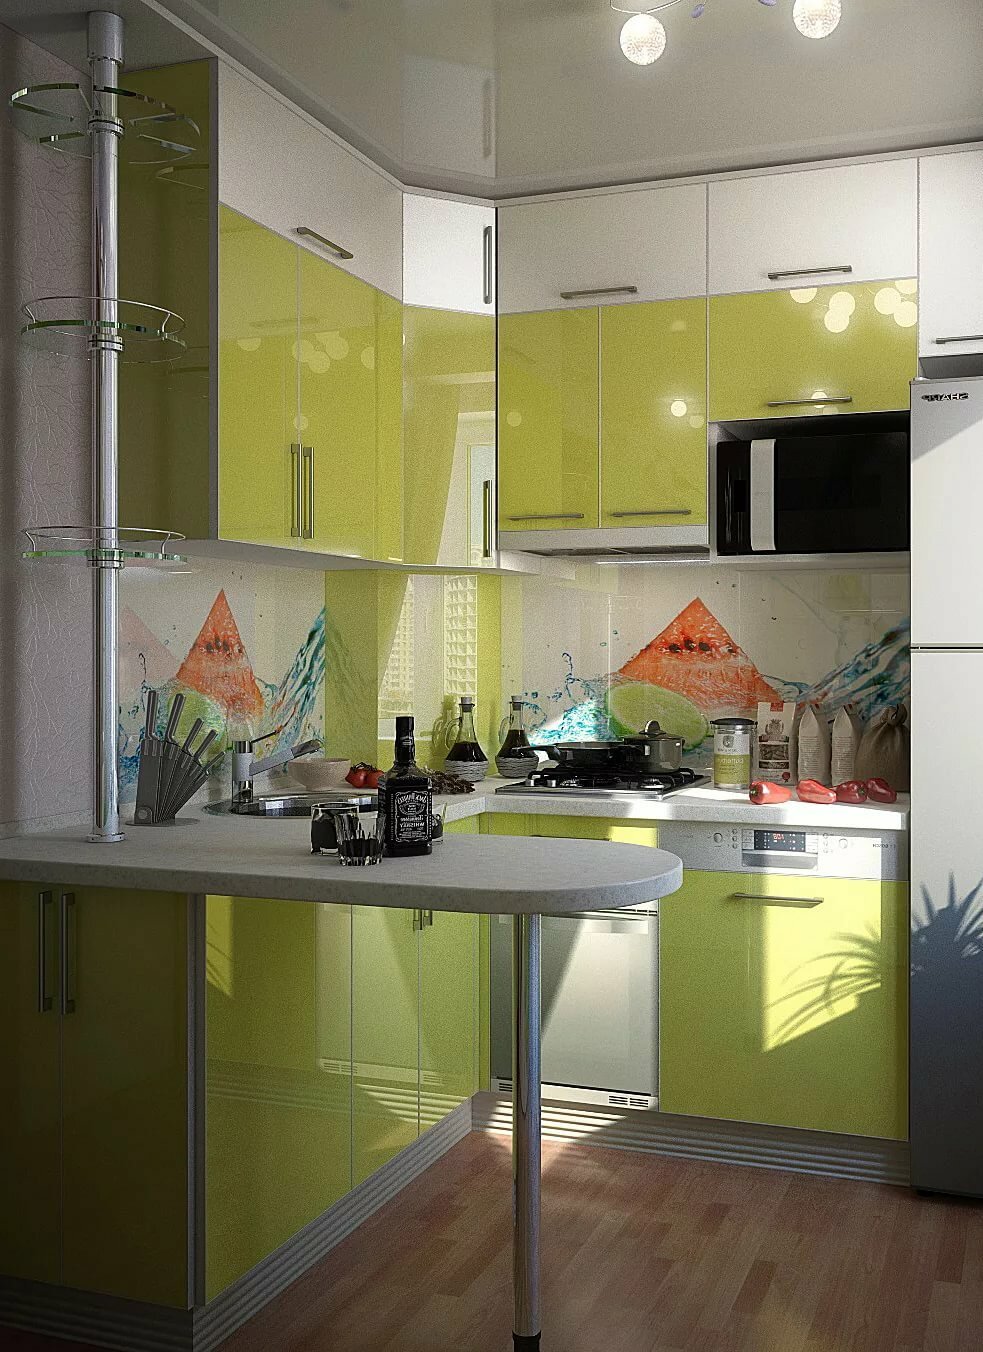 Кухня 7 кв м с холодильником в панельном доме, дизайн интерьера маленькой комнаты с угловым гарнитуром, малогабаритной мебелью и балконом